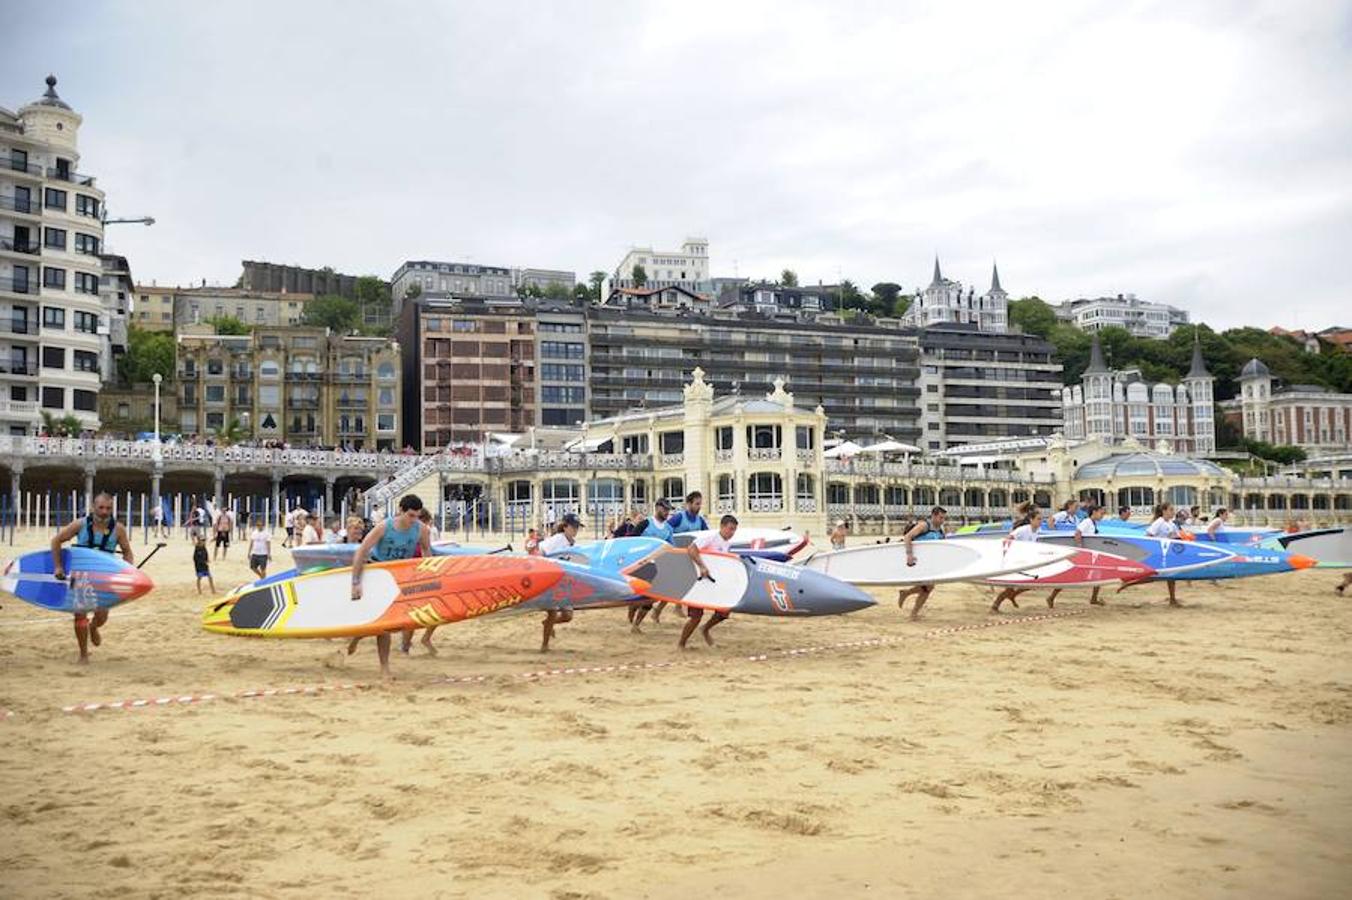 San Sebastián, de la mano del club Fortuna, ha acogido este sábado una de las citas del circuito europeo de stand up paddle valedera también para la clasificación mundial. Es el tercer año consecutivo que el circuito tiene parada en nuestra costa. 